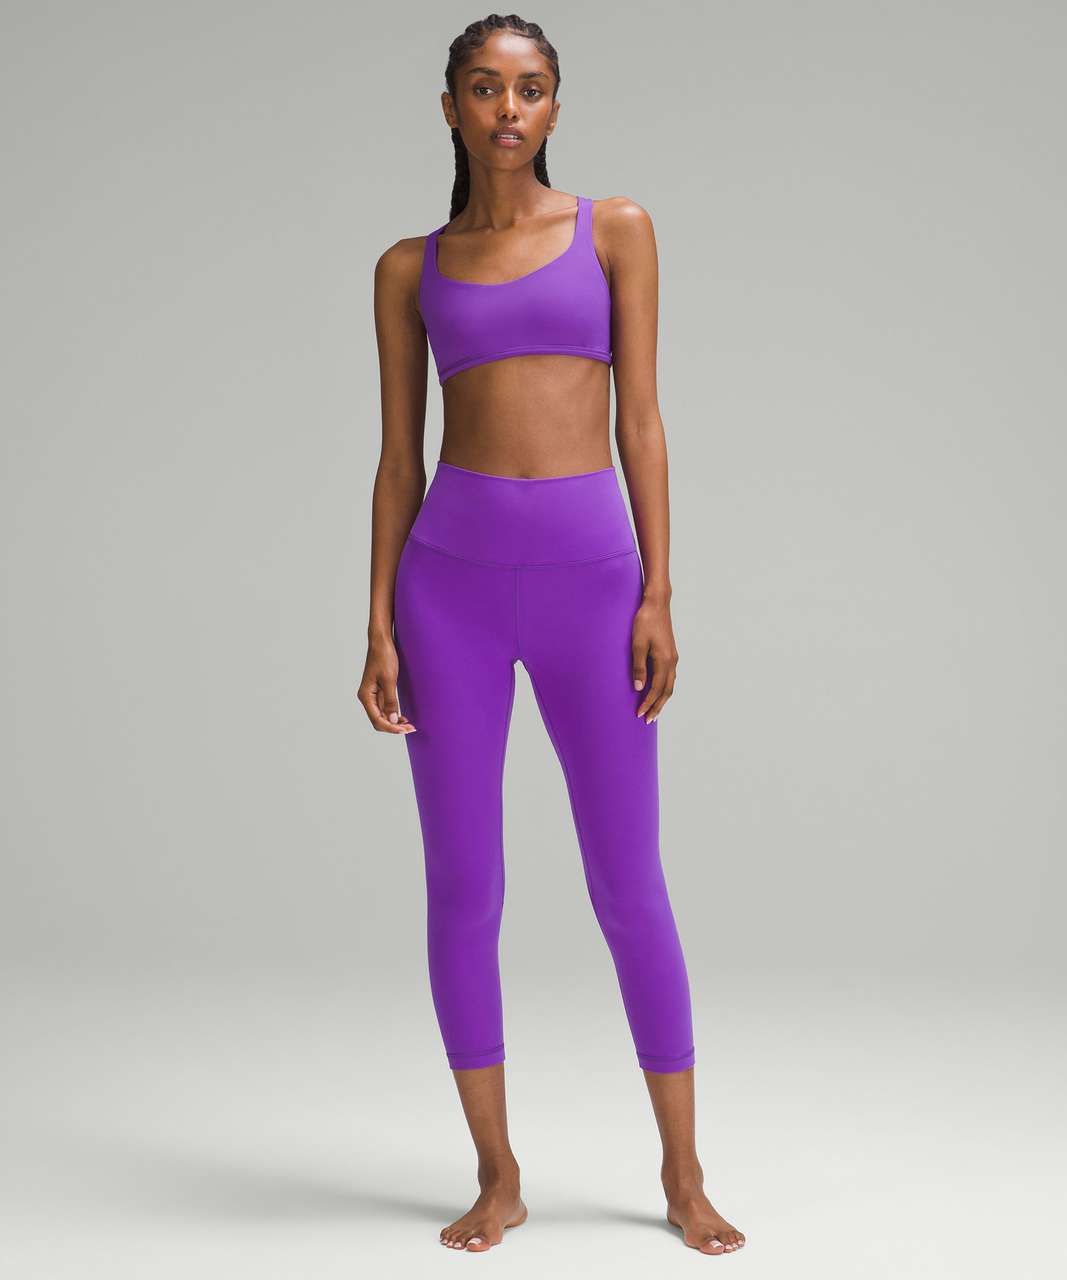 Lululemon Athletica Active Purple Women's Pants Size 4 Athletic Pants